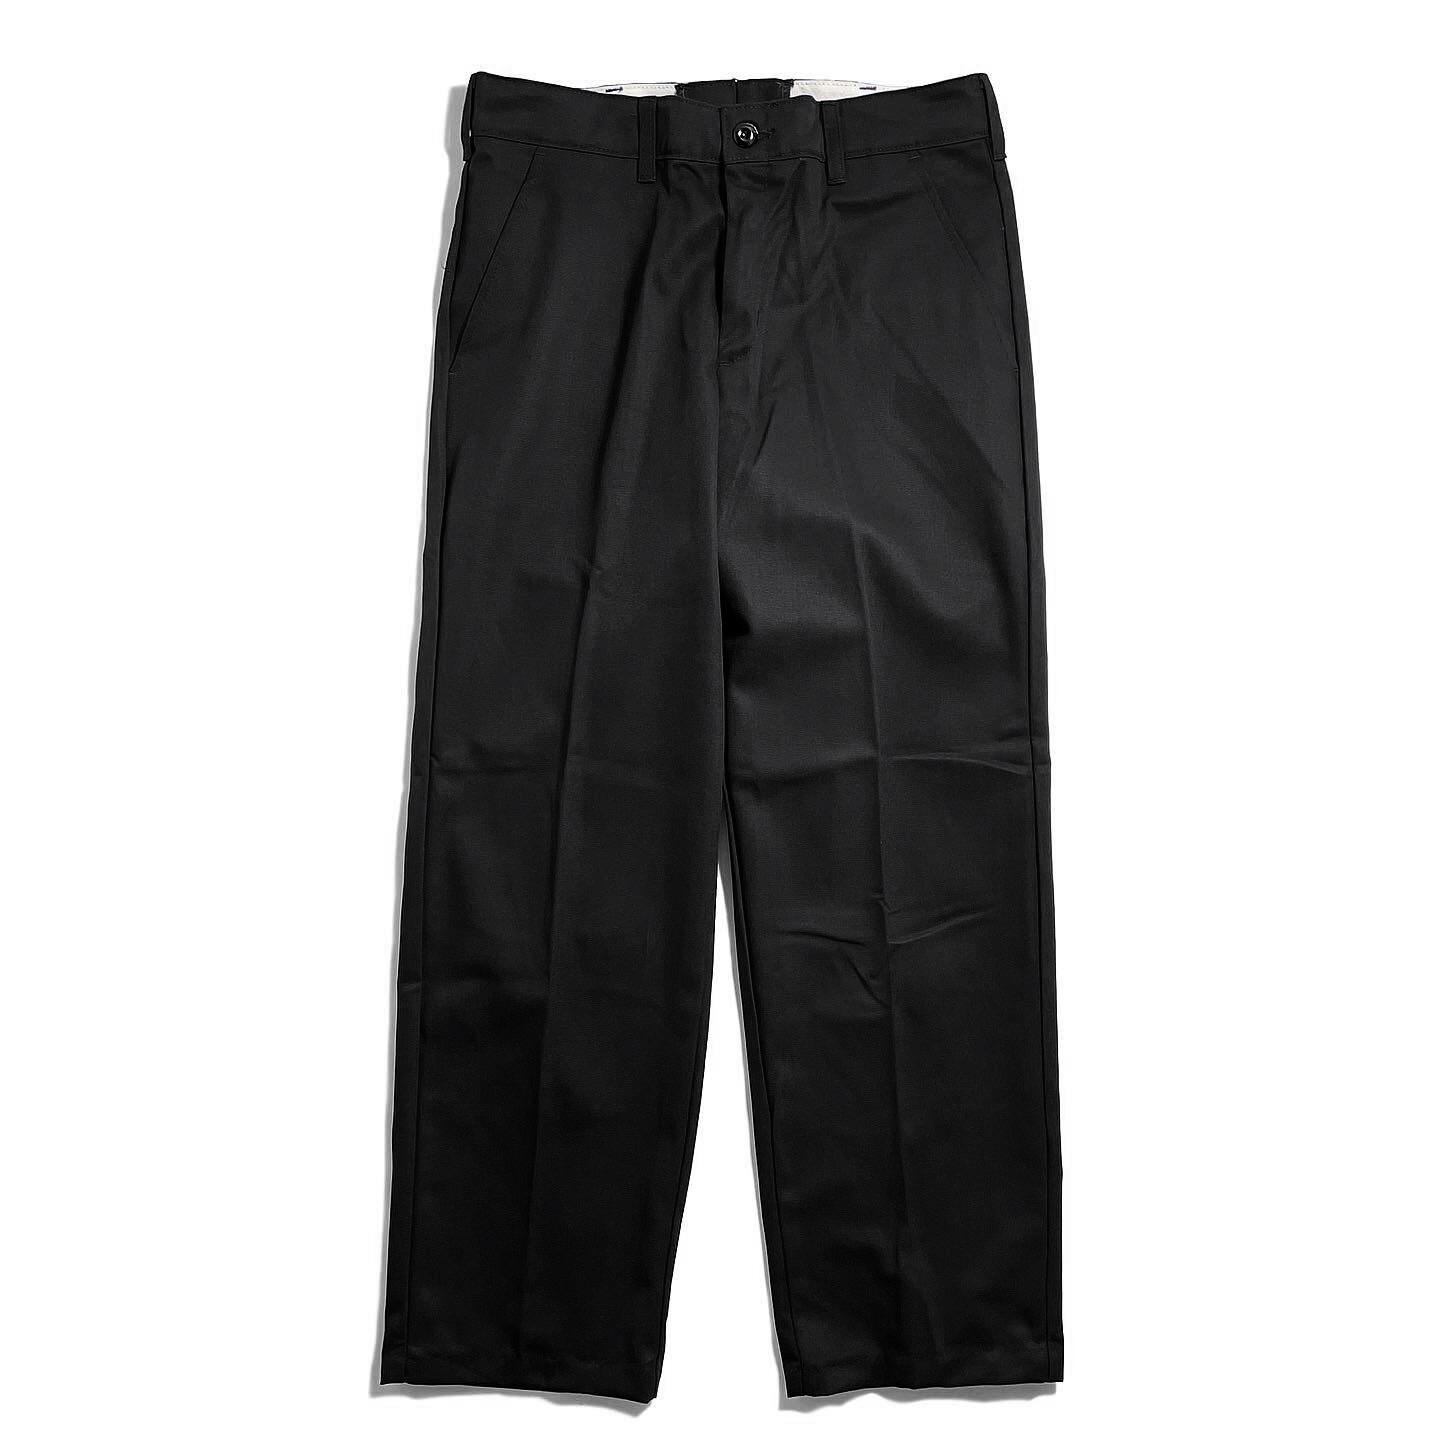 画像1: Red Kap Dura-Kap Industrial Work Pants Black / レッドキャップ インダストリアル ワークパンツ ブラック (1)